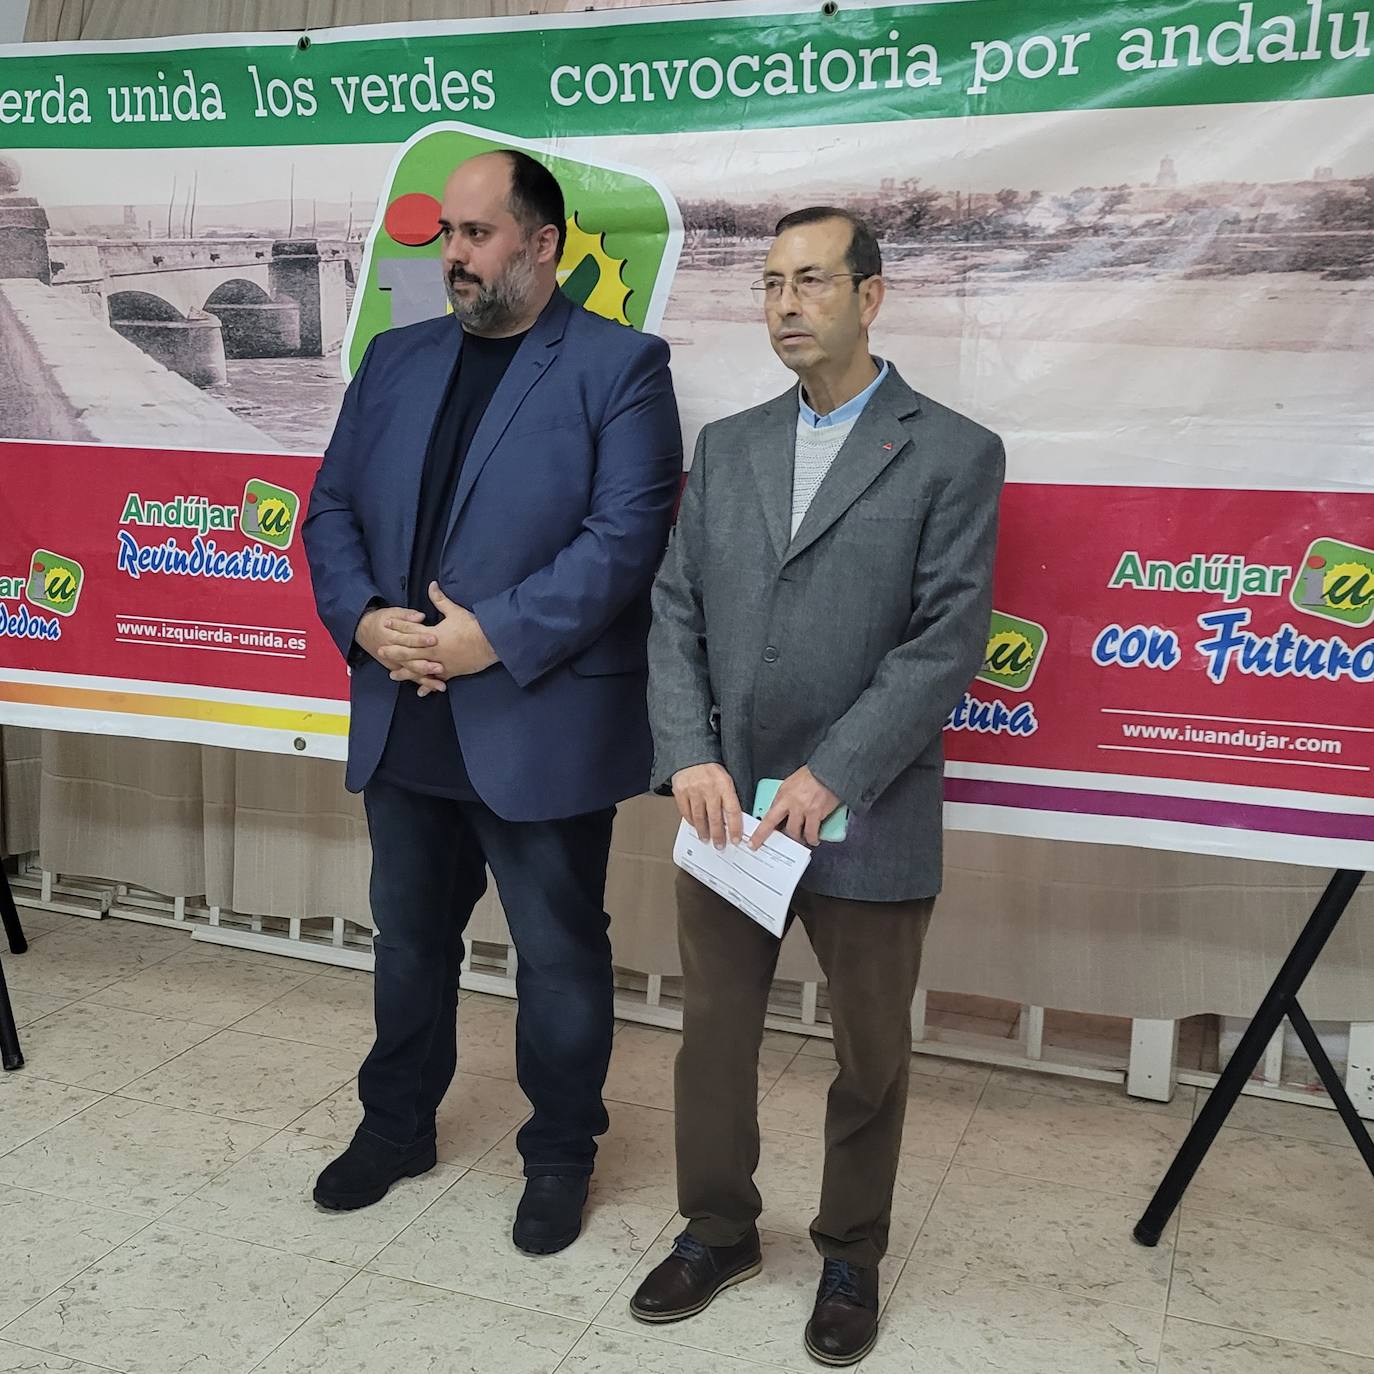 El candidato de IU a la alcaldía de Andújar invoca a la unión de las fuerzas a la izquierda del PSOE